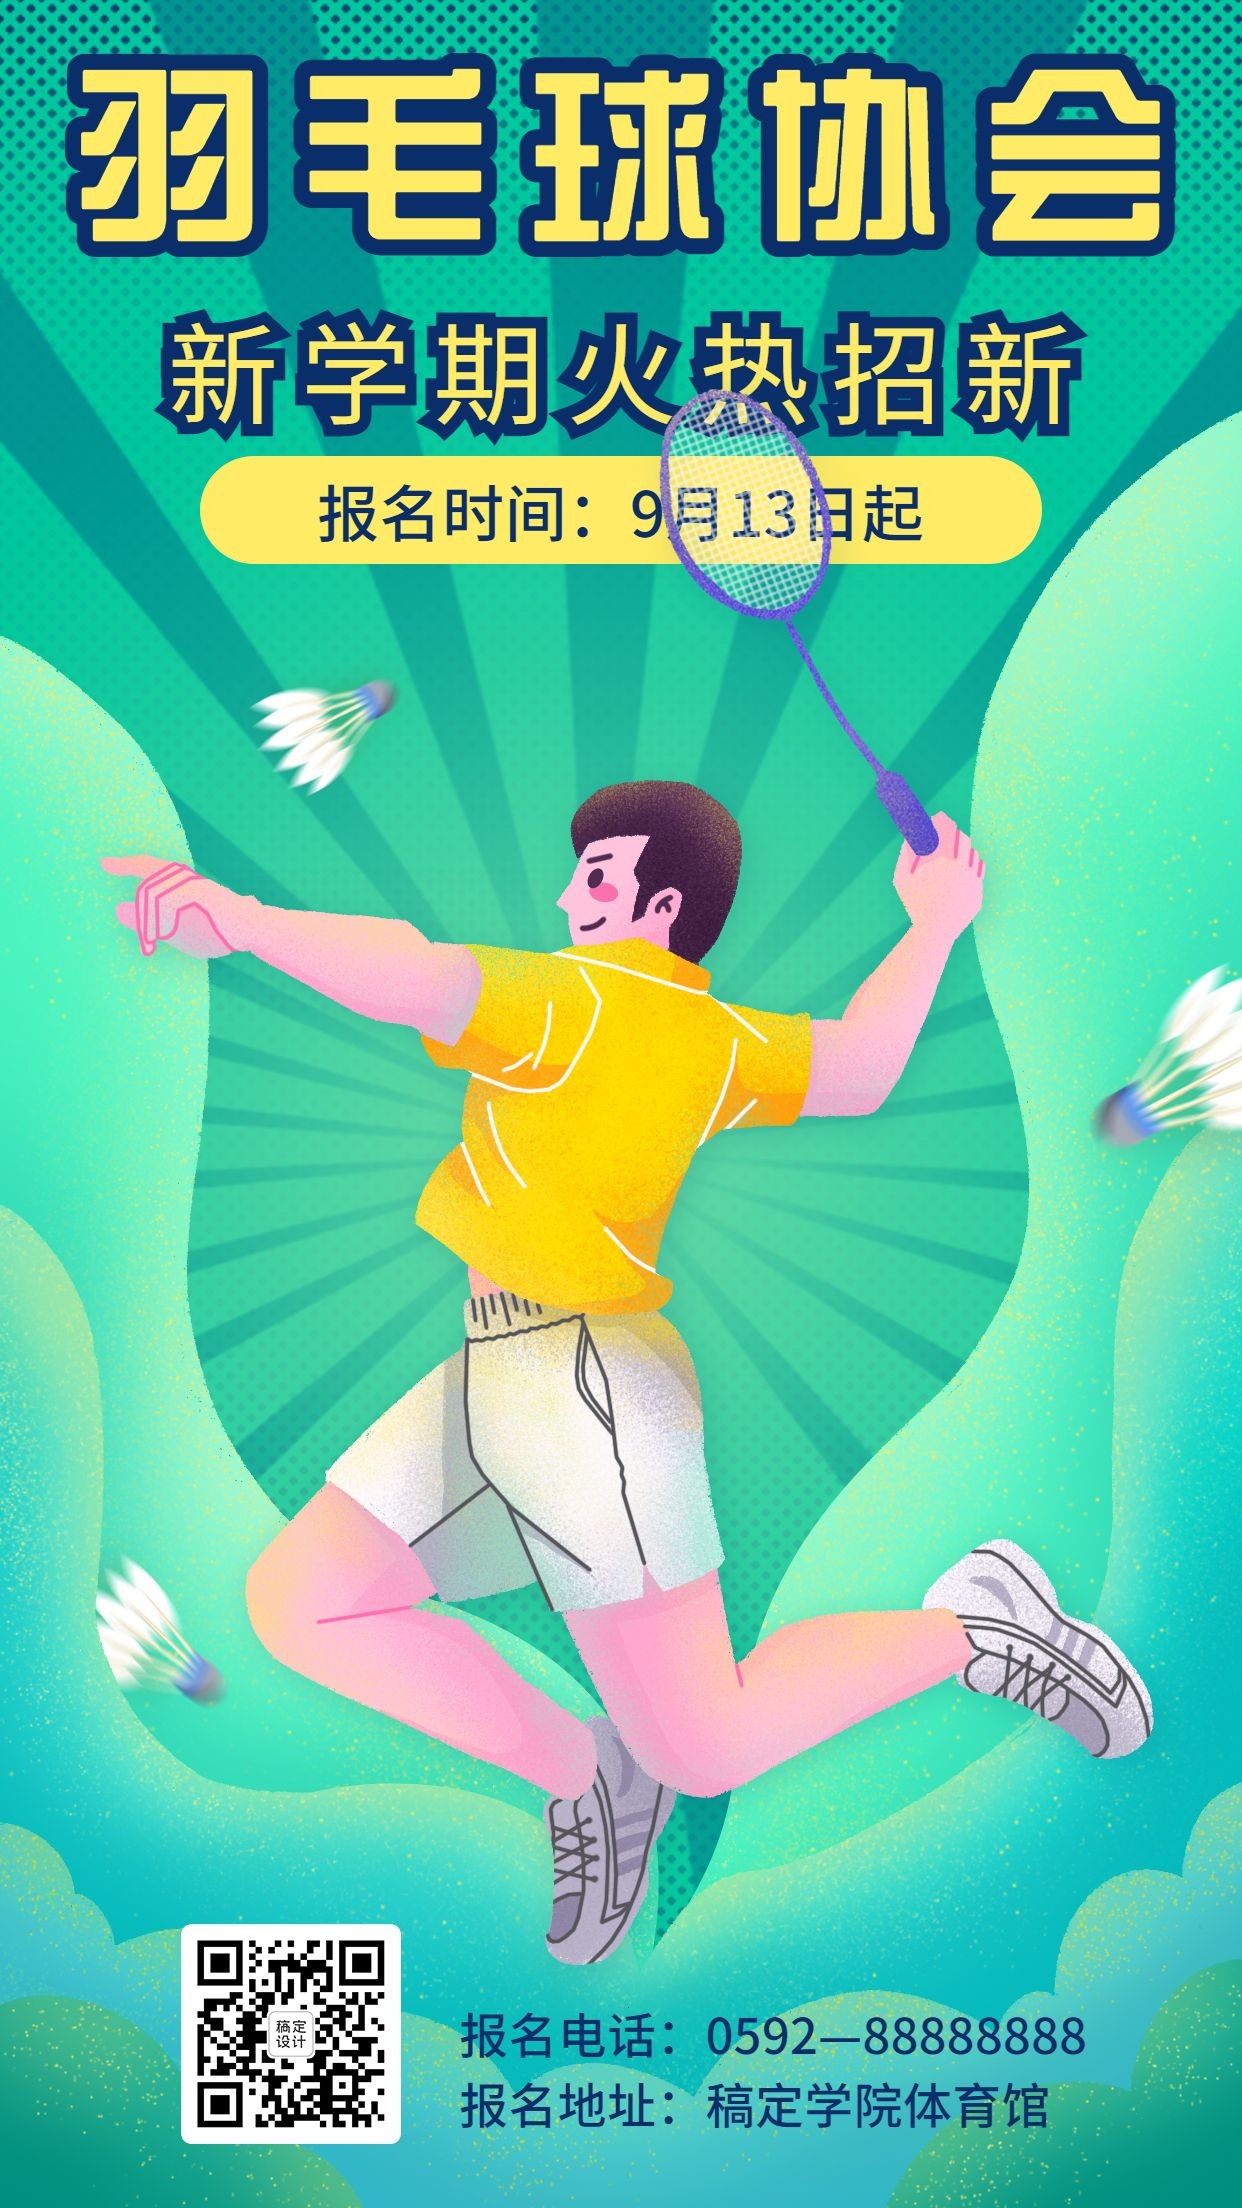 健身运动羽毛球社团招新海报预览效果